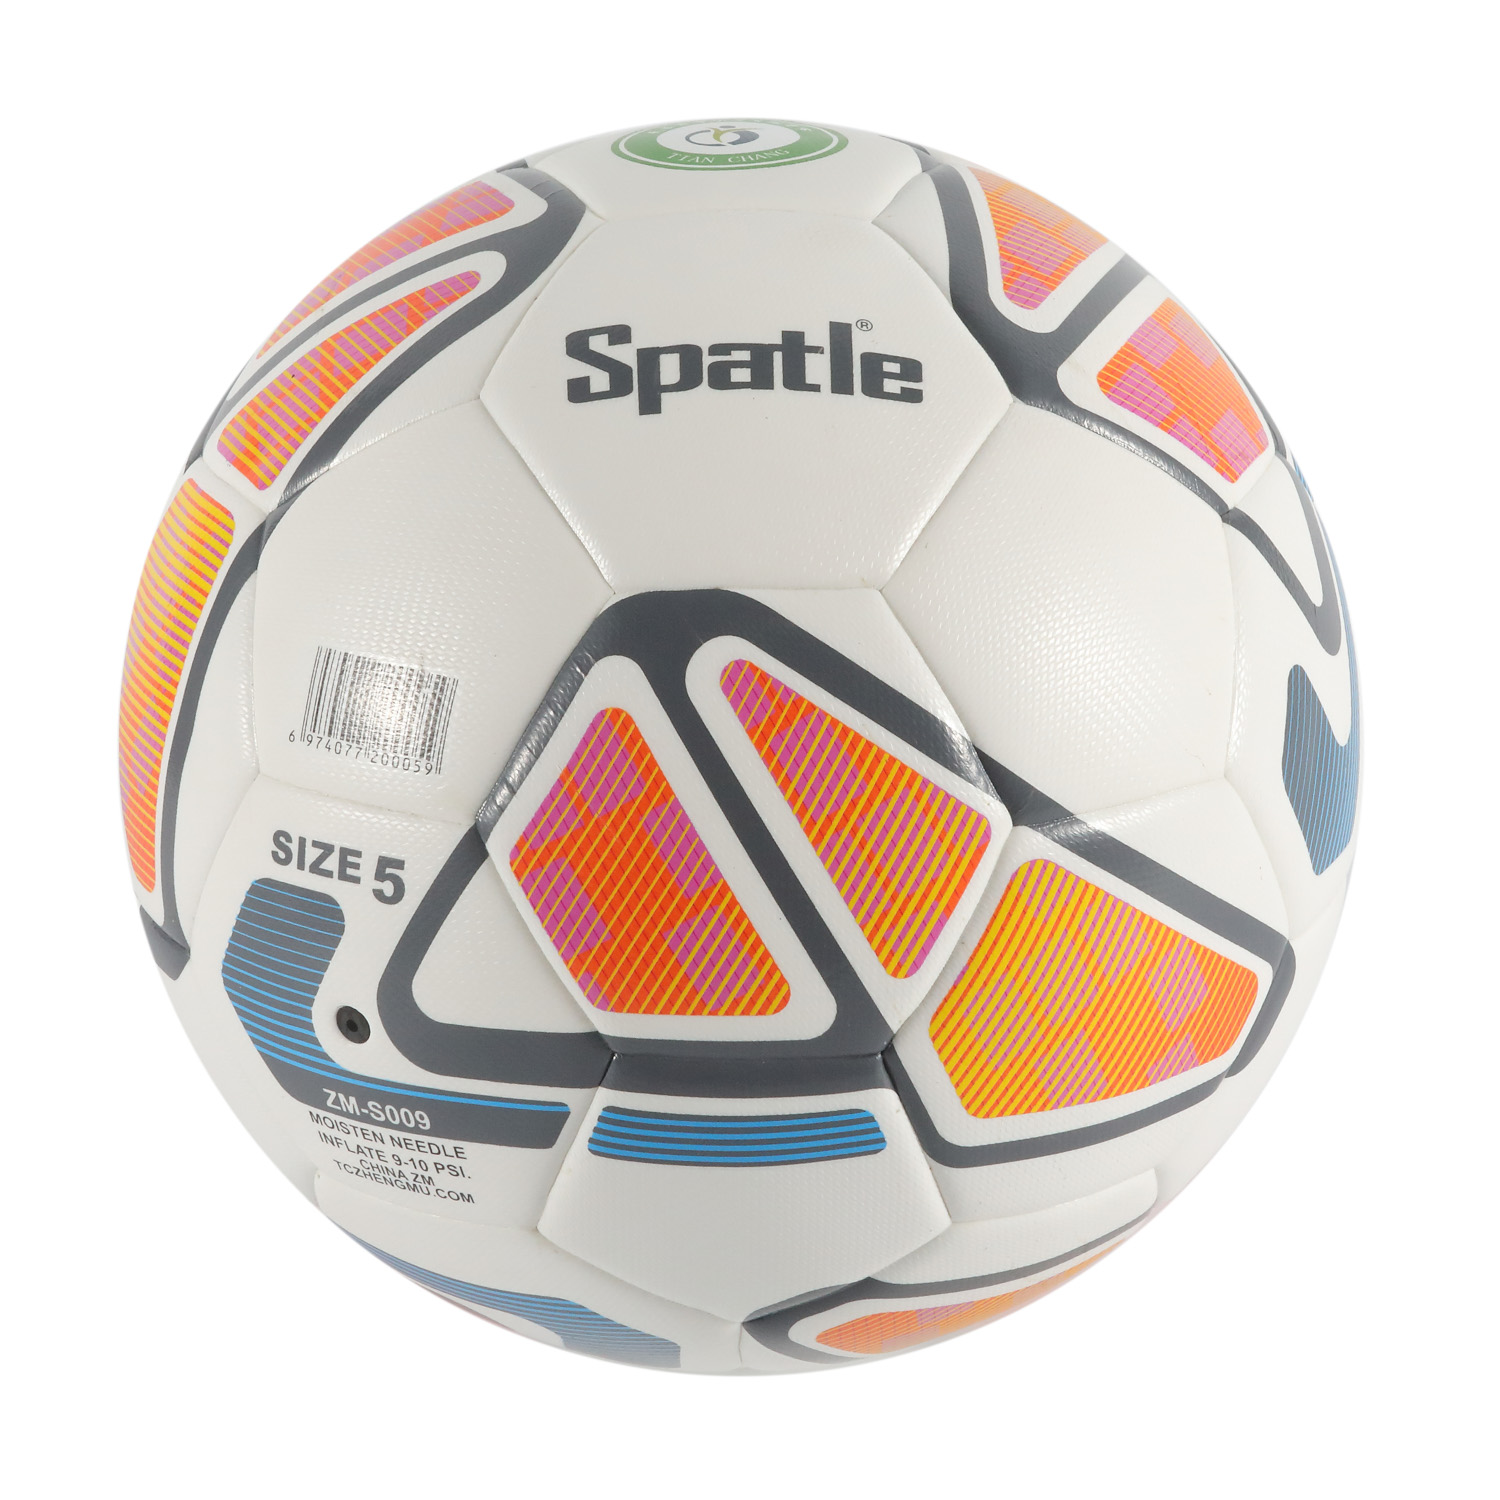 Traditionelles, maschinengenähtes Fußball-/Fußball-PVC-Cover Game&Match mit benutzerdefiniertem Logo